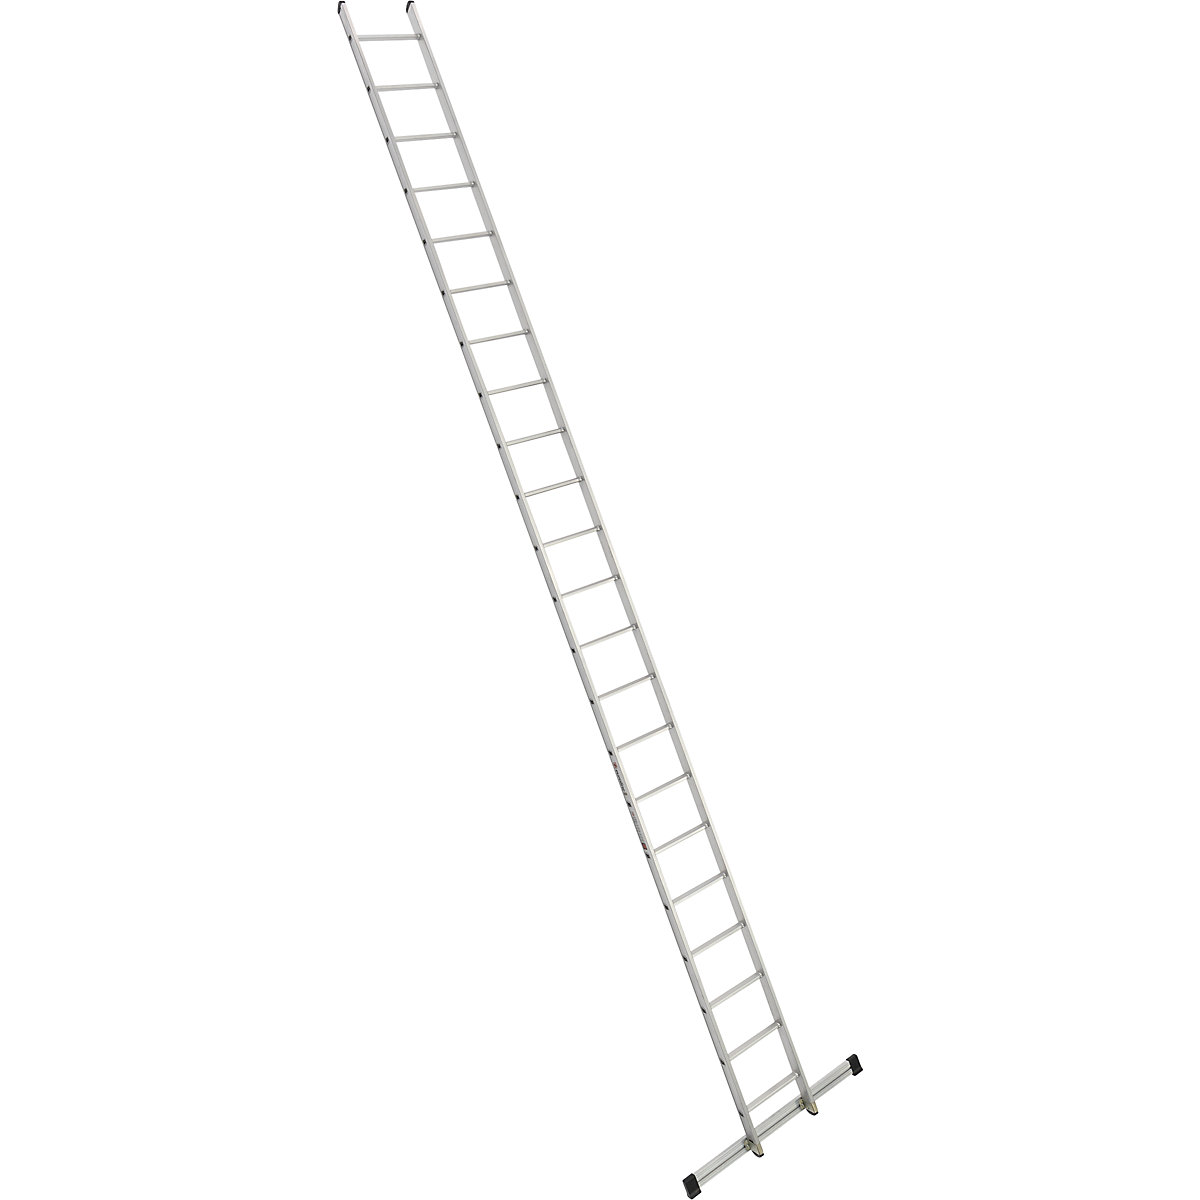 Príložný rebrík s priečkami – euroline, šírka 410 mm, 22 priečok s priečnikom-4